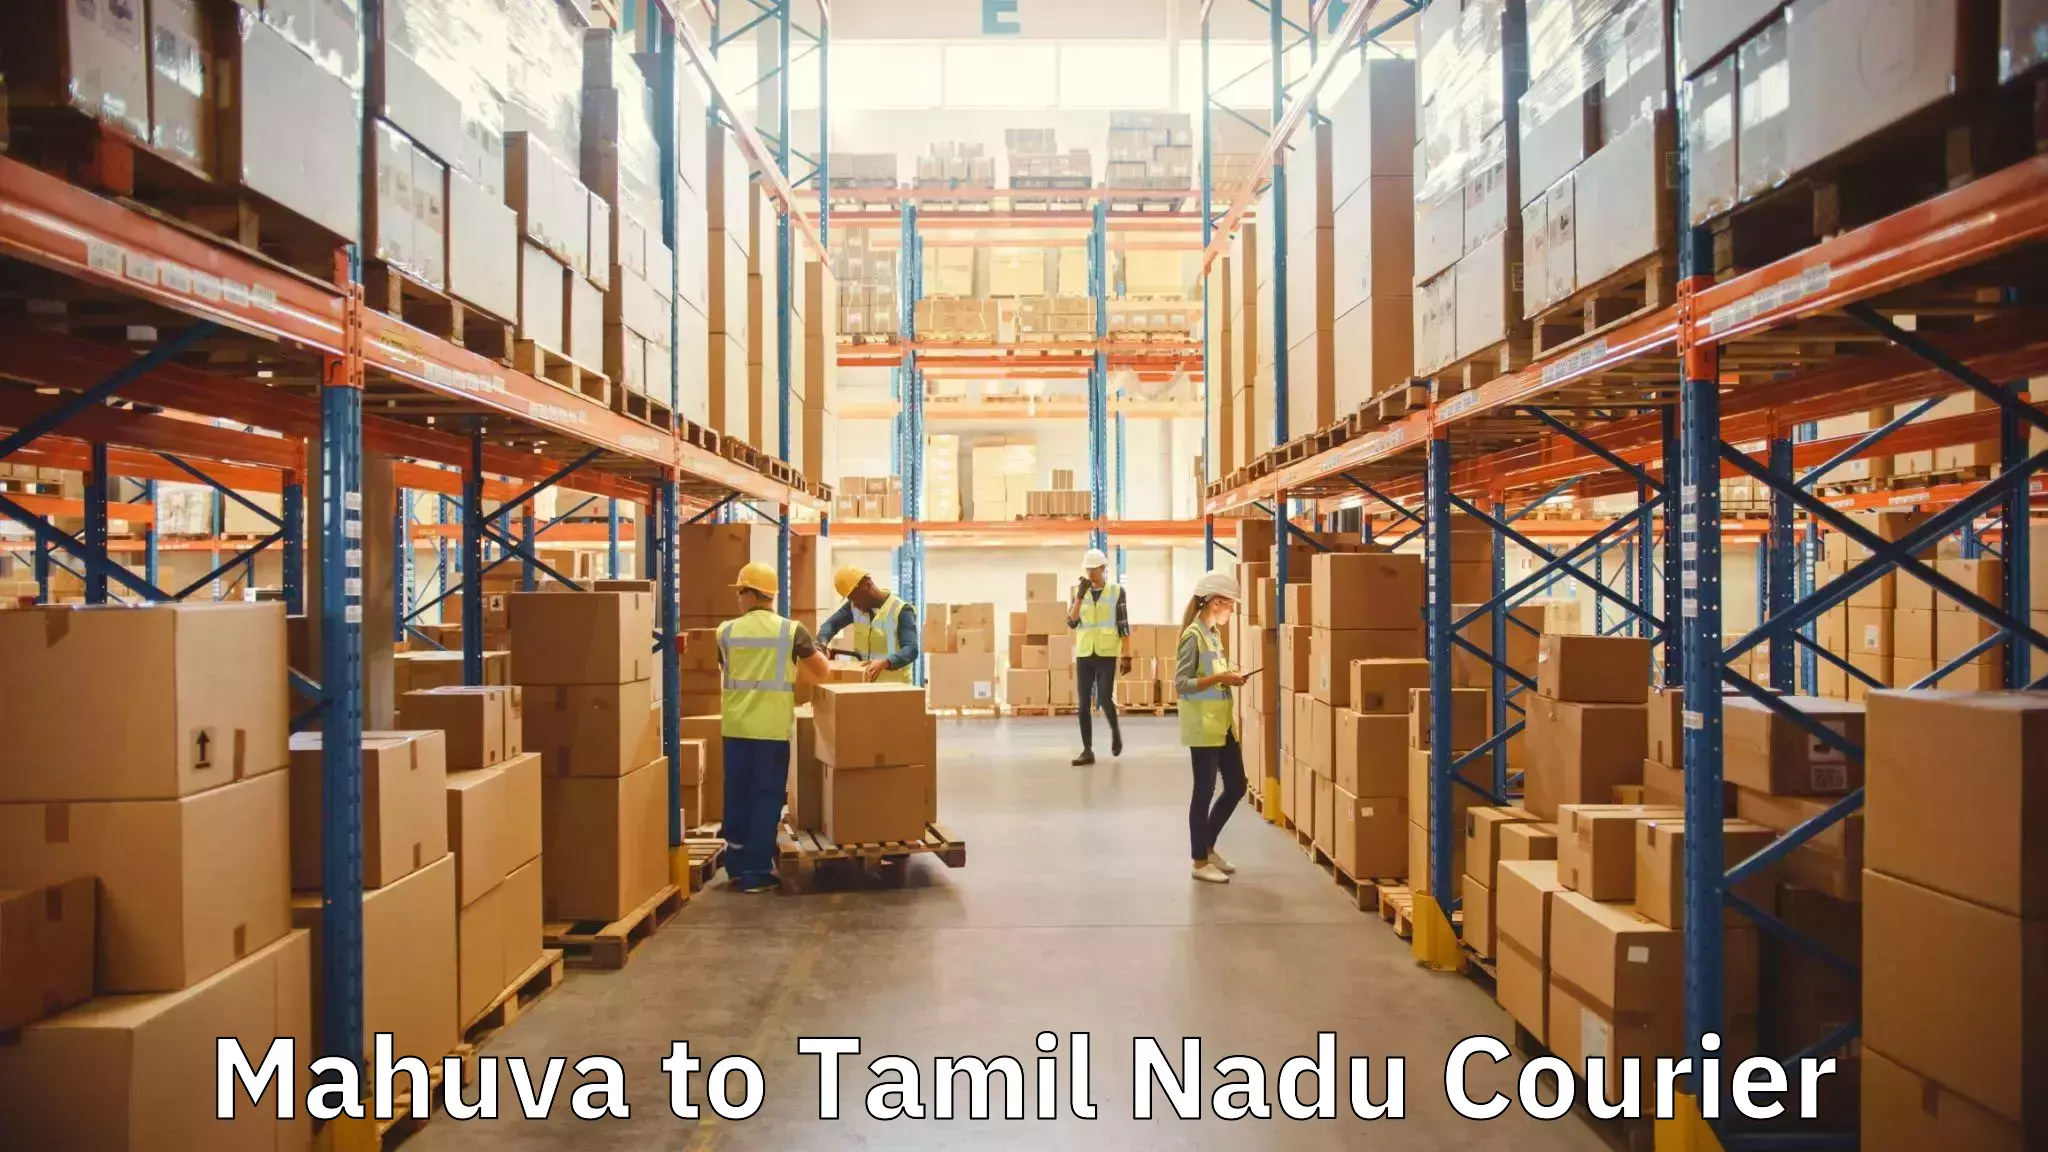 Specialized moving company Mahuva to Devakottai